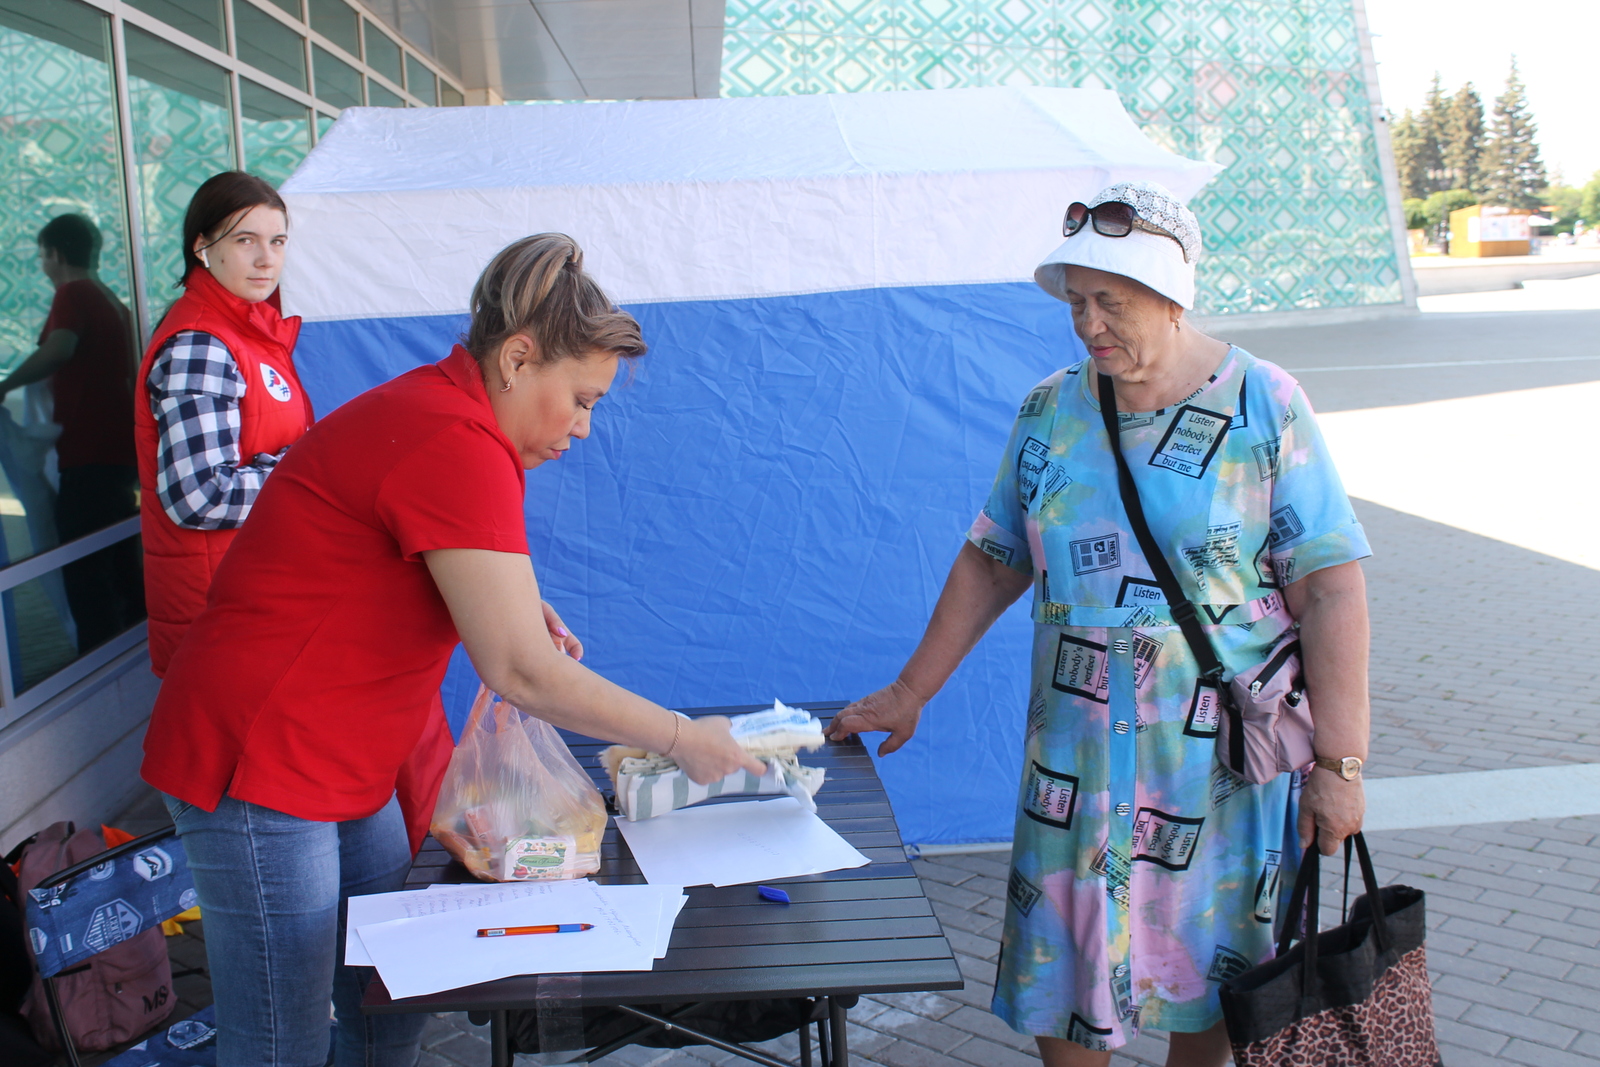 В Уфе на Гражданском форуме собрали гуманитарную помощь Донбассу